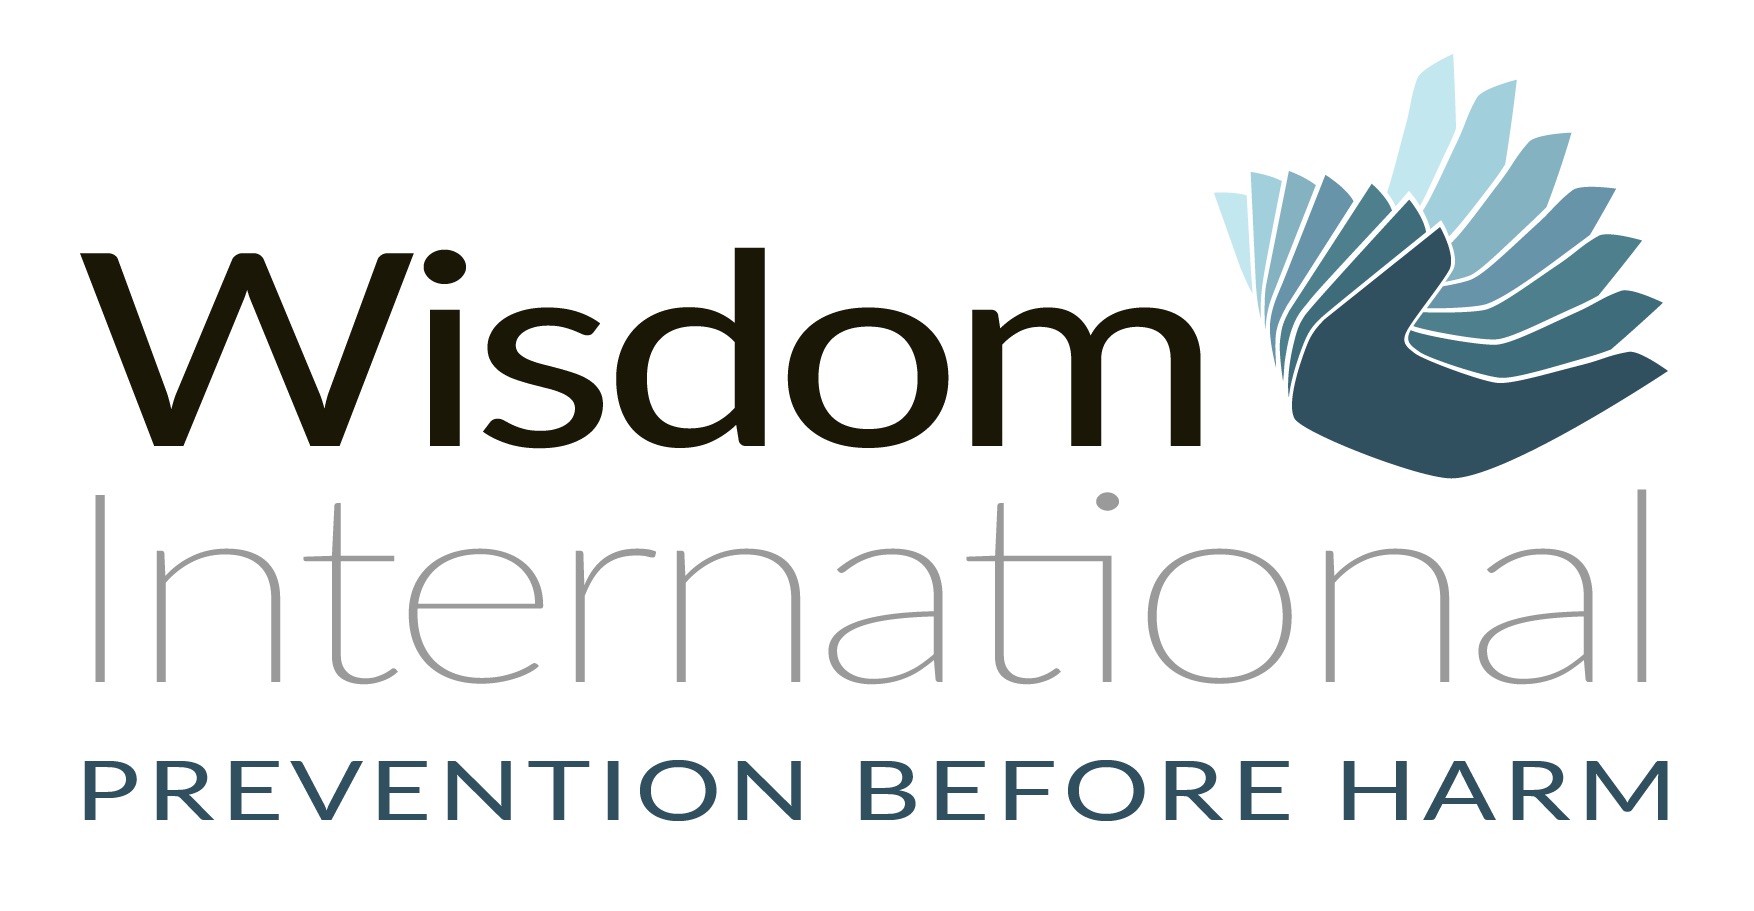 Wisdom International: Help2Others